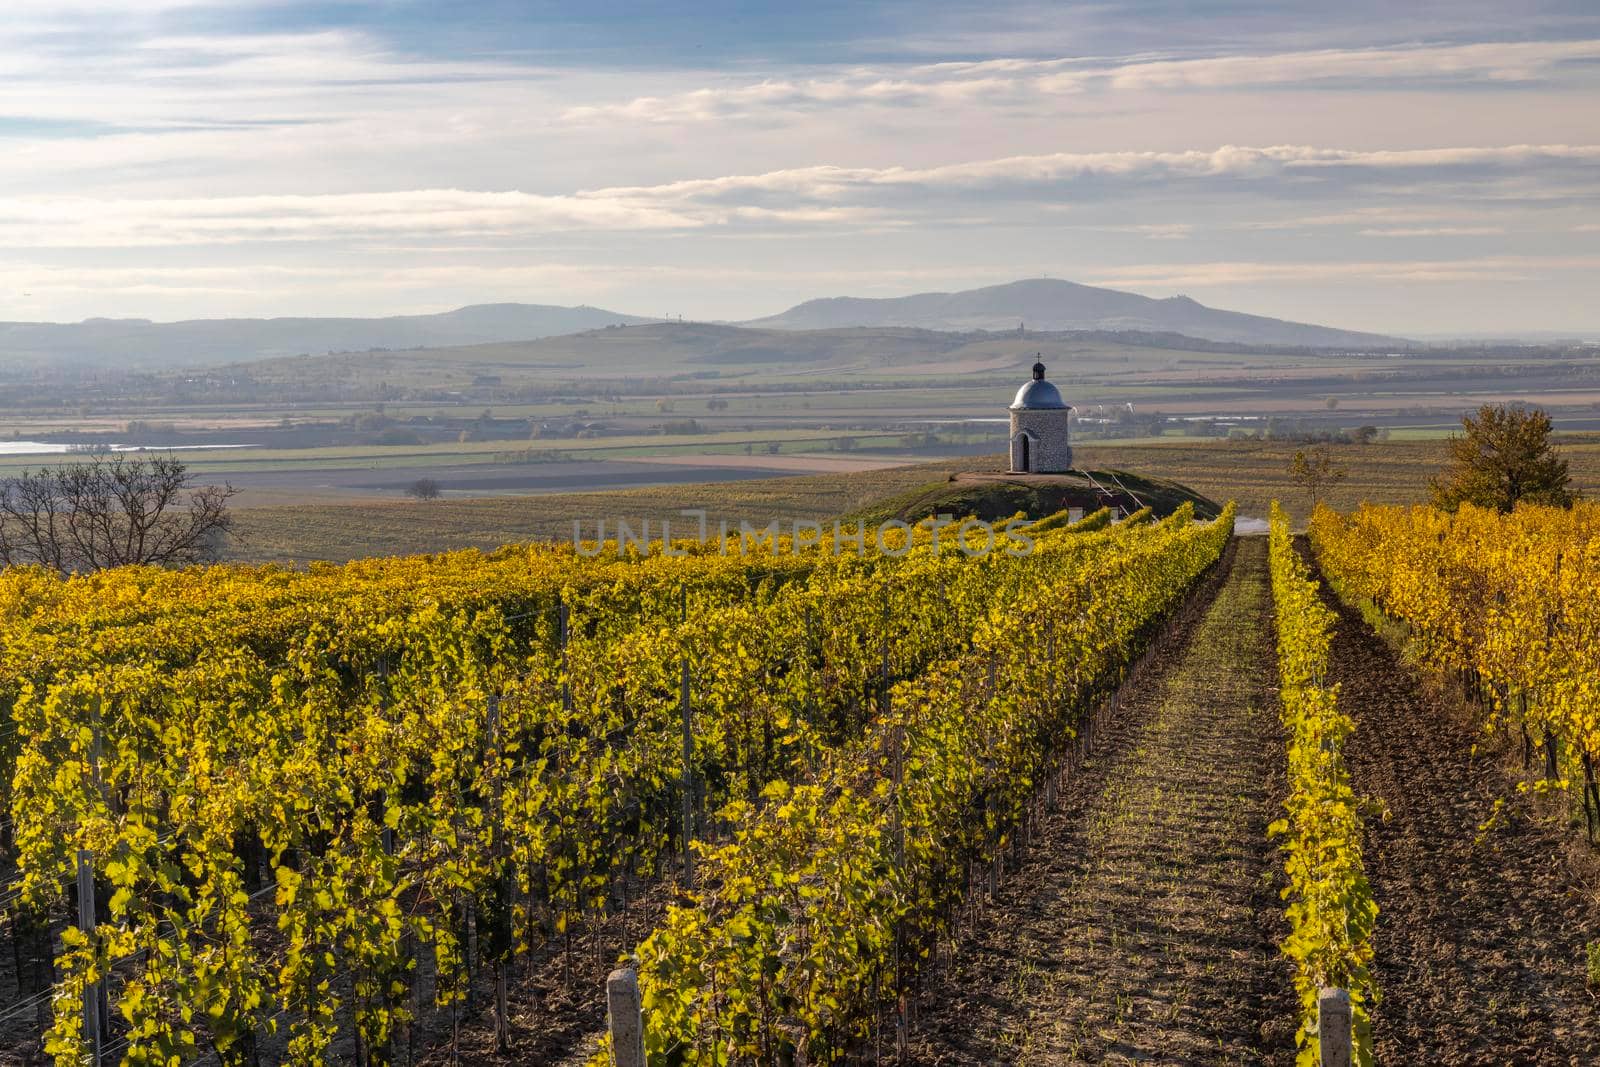 Autumn vineyard near Velke Bilovice, Southern Moravia, Czech Republic by phbcz